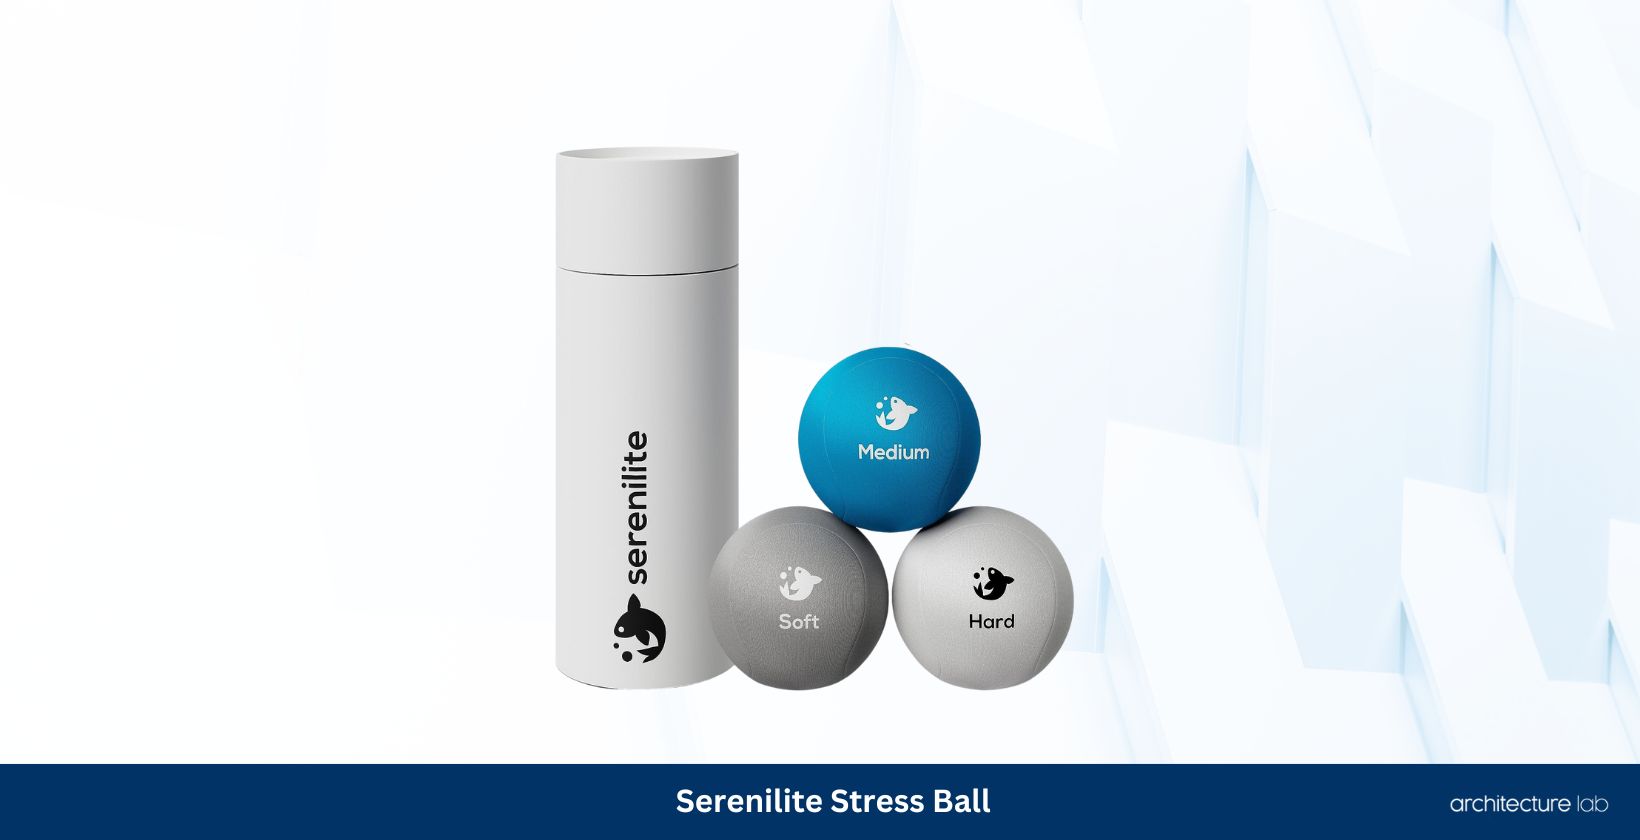 Serenilite stress ball